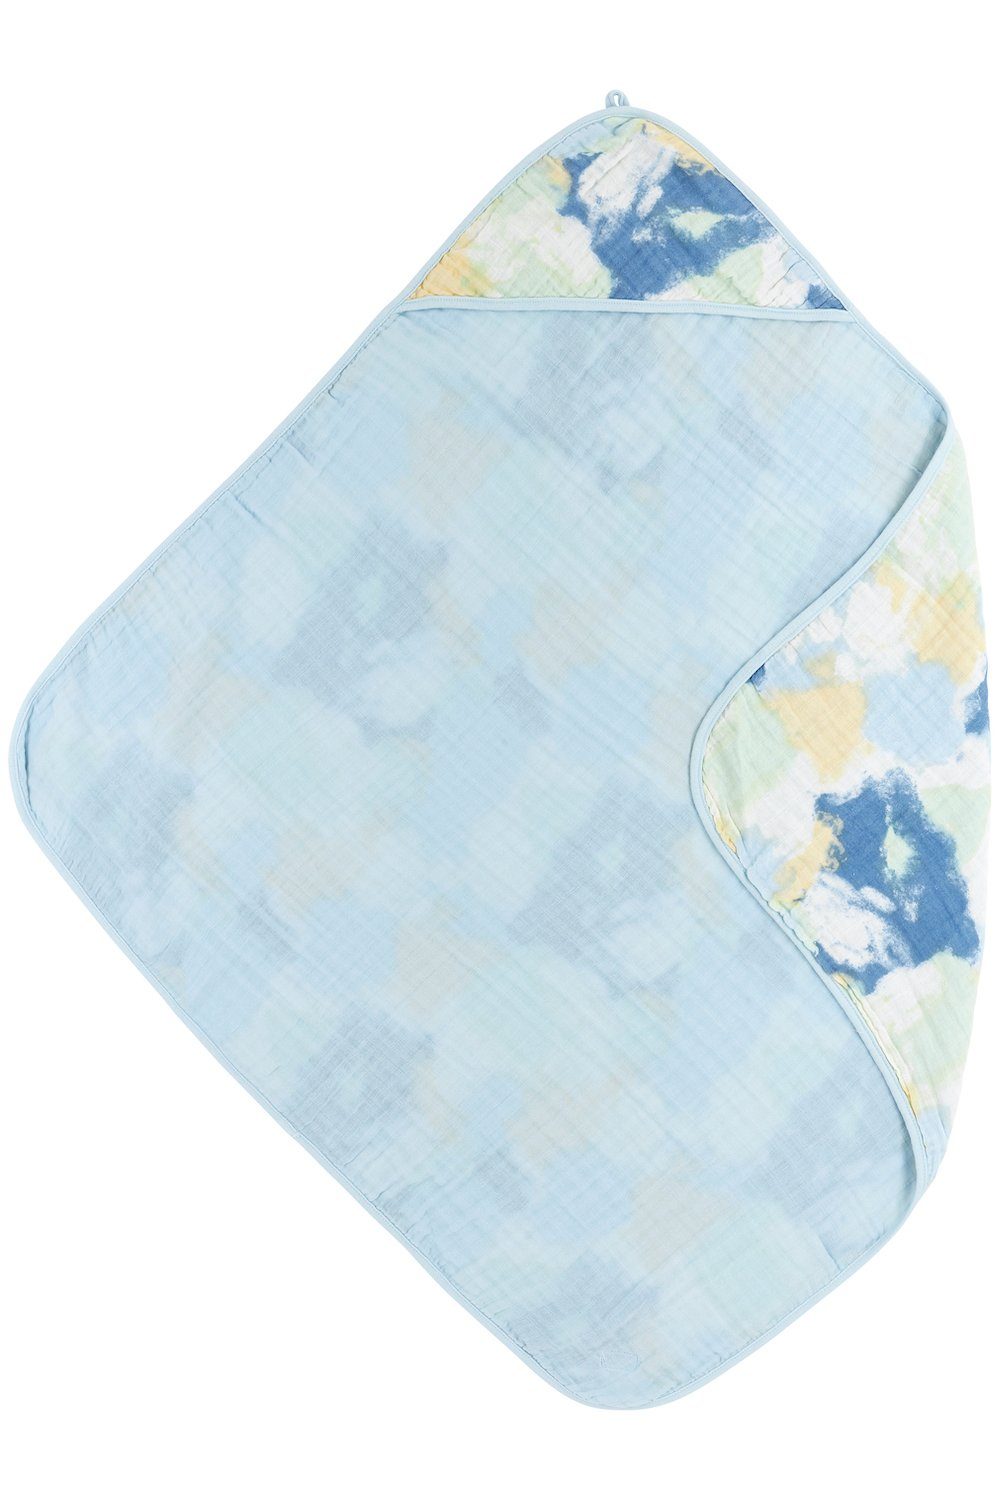 Meyco Baby Kapuzenhandtuch Tie-Dye Light Blue, Jersey (1-St), 80x80cm